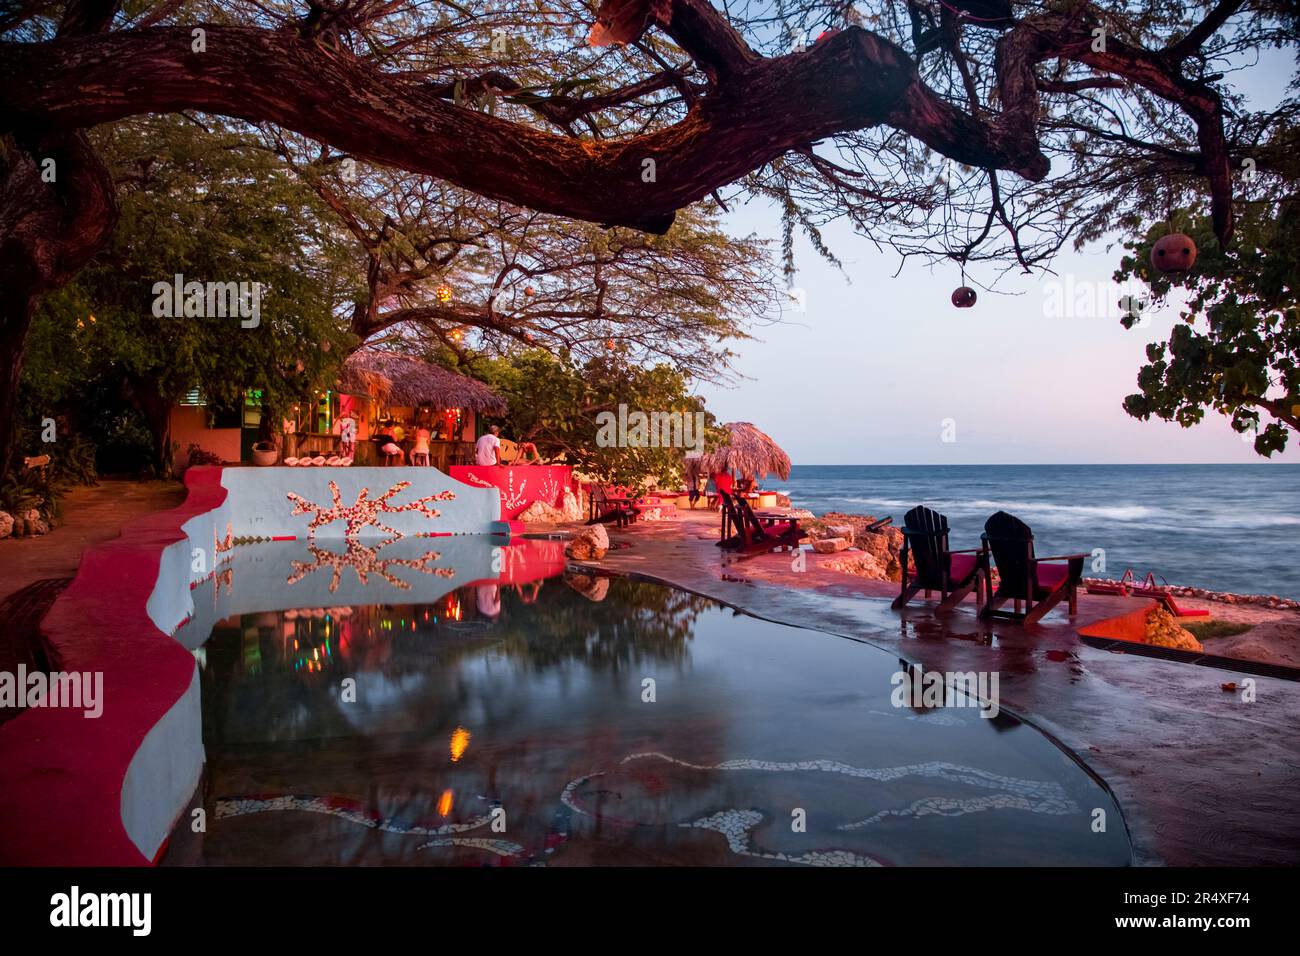 Area pranzo e bar accanto alla piscina di acqua salata in un resort giamaicano: Calabash Bay, Giamaica Foto Stock